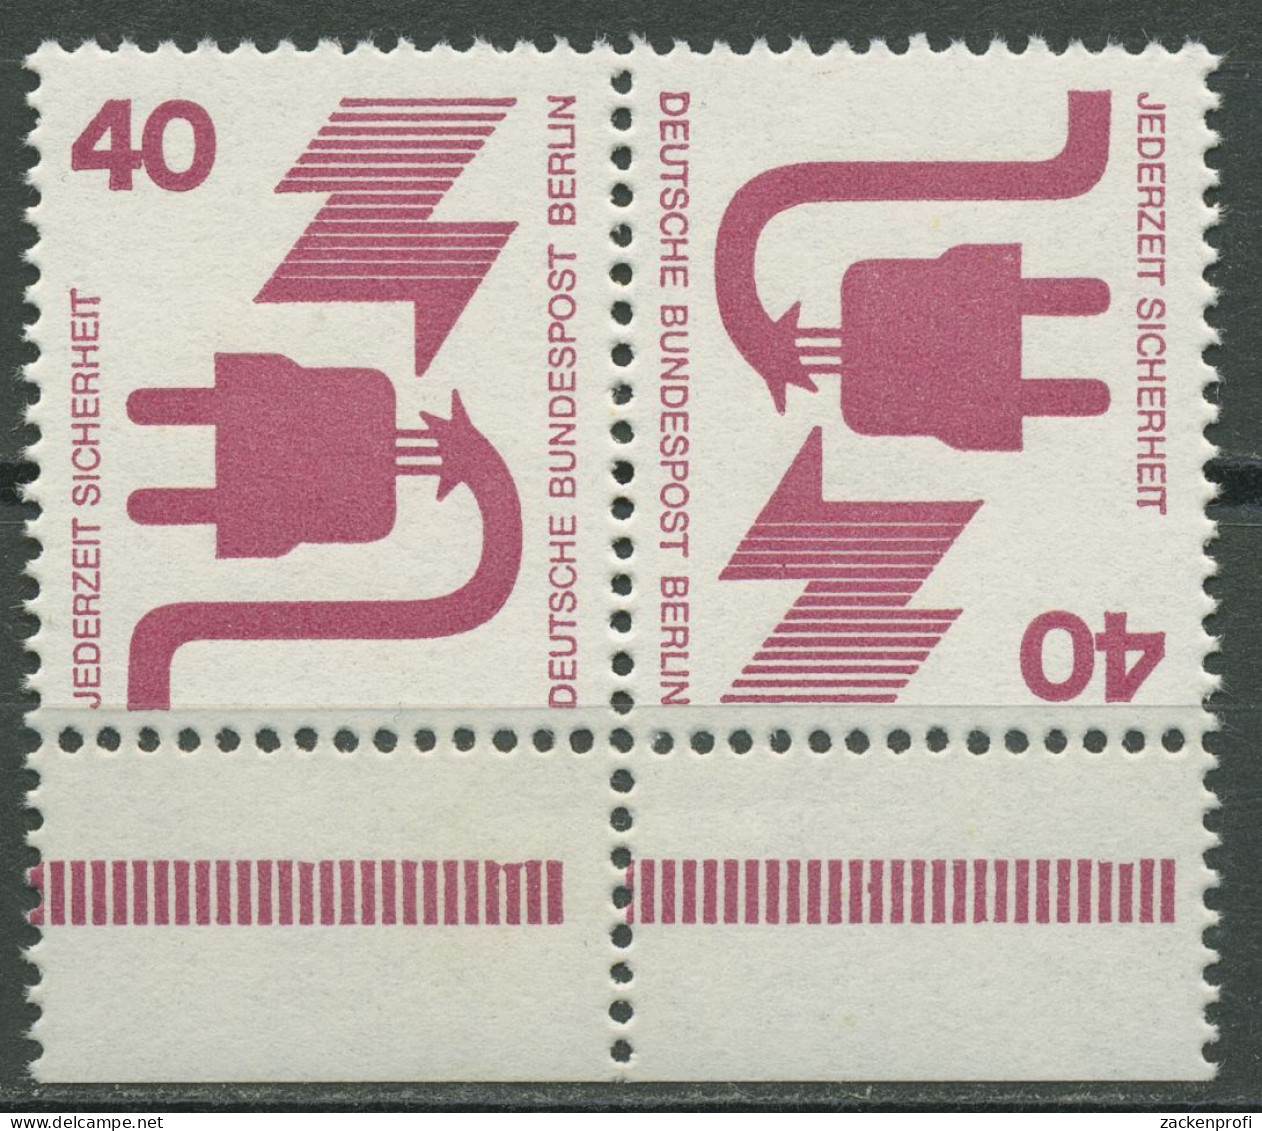 Berlin Zusammendrucke 1972 Unfallverhütung Unterrand K 7 UR Dgz Postfrisch - Zusammendrucke